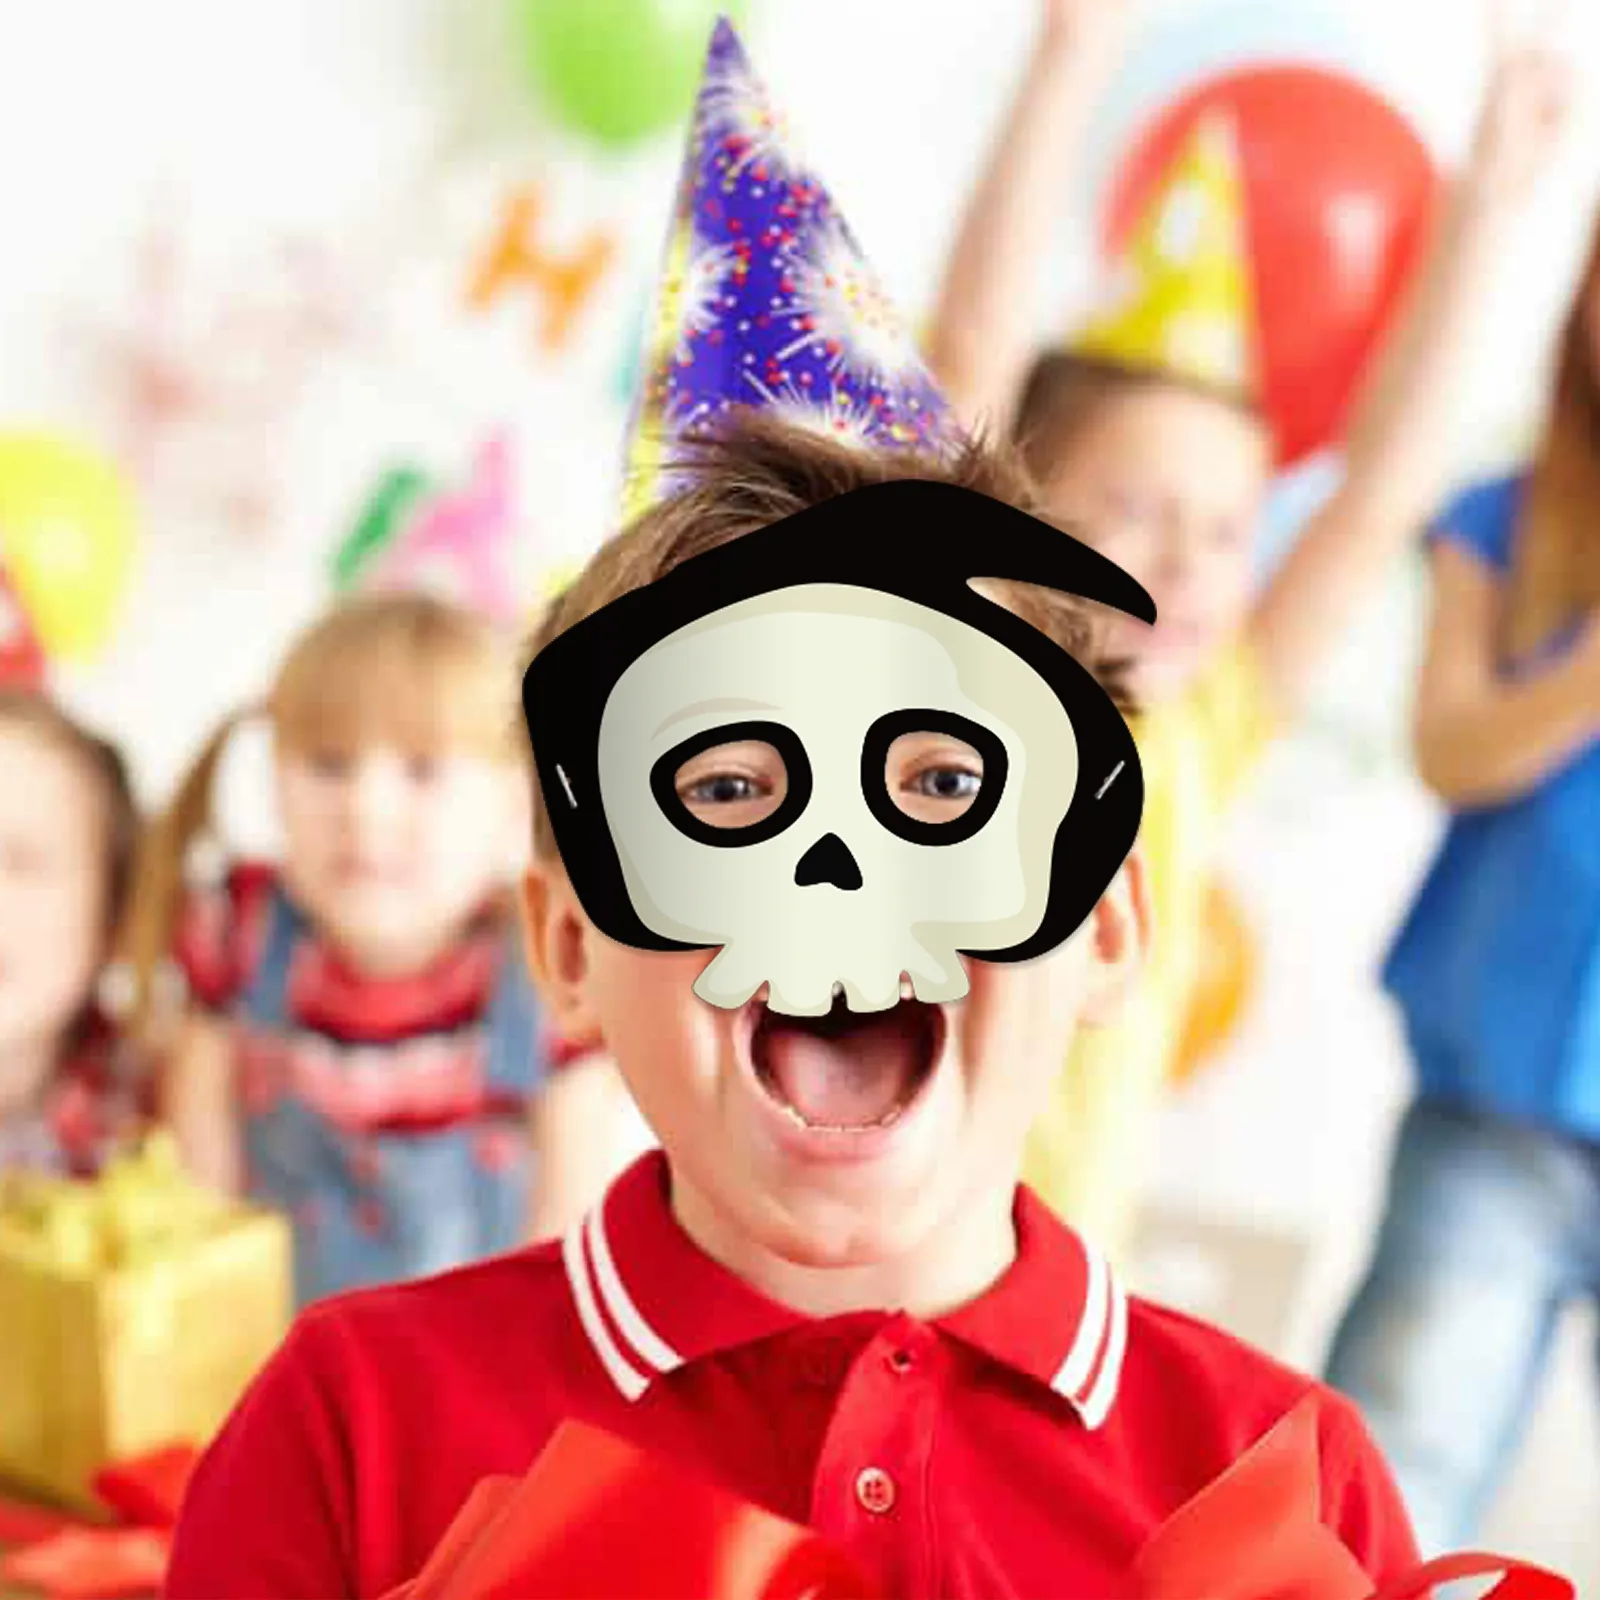 Máscara de ojo de Fiesta infantil de papel de alta calidad al por mayor, máscara de cosplay de fiesta, disfraces de Halloween, máscara de fiesta